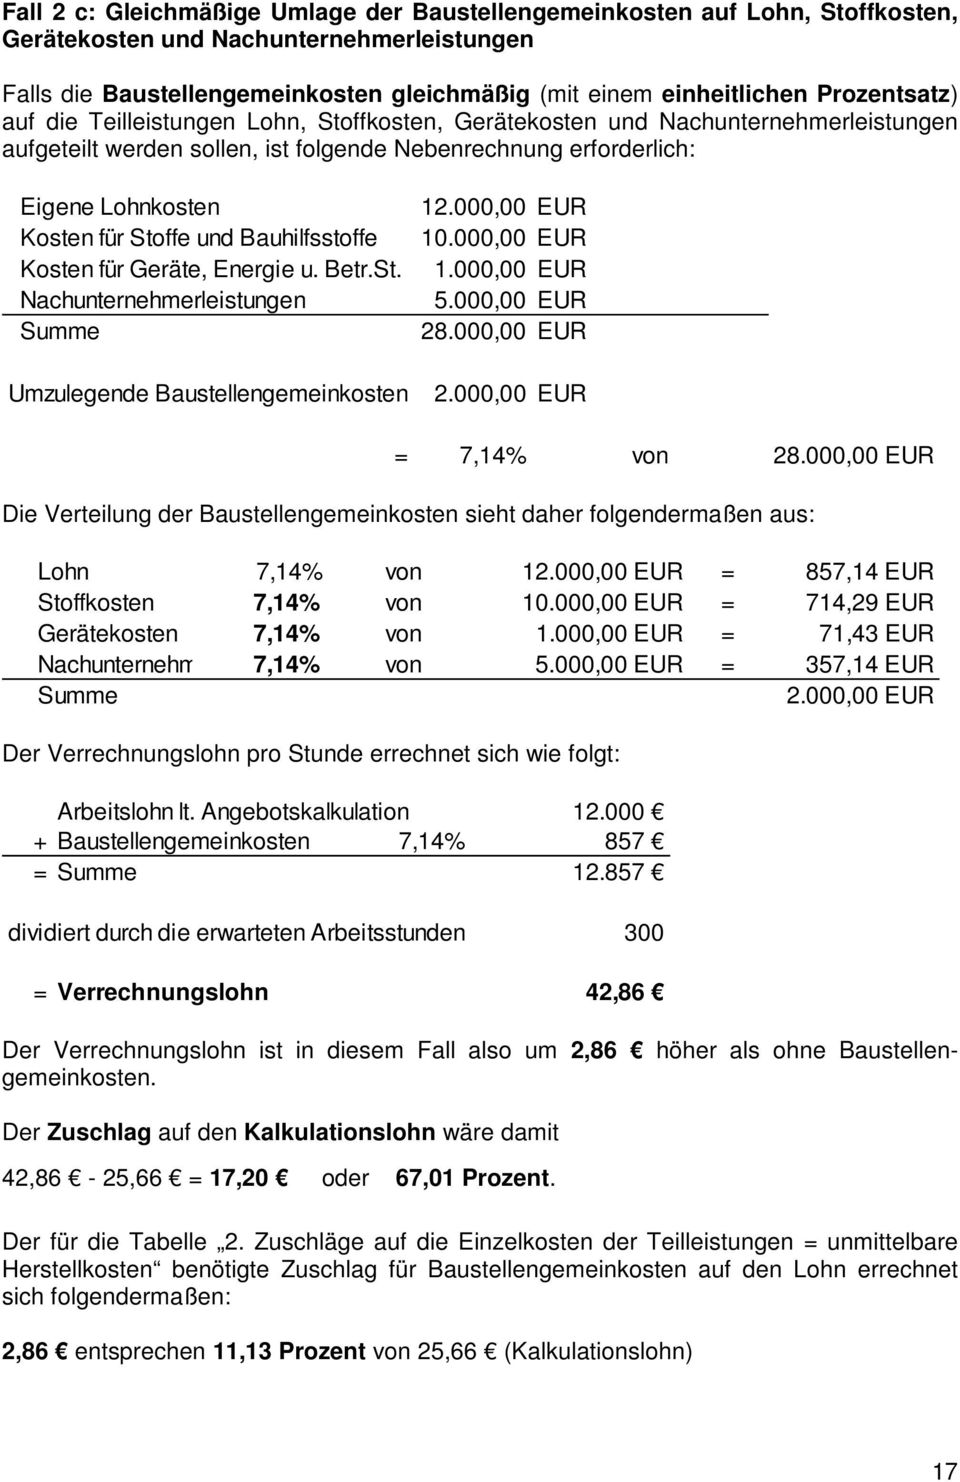 Stoffe und Bauhilfsstoffe Kosten für Geräte, Energie u. Betr.St. Nachunternehmerleistungen Summe Umzulegende Baustellengemeinkosten 12.000,00 EUR 10.000,00 EUR 1.000,00 EUR 5.000,00 EUR 28.